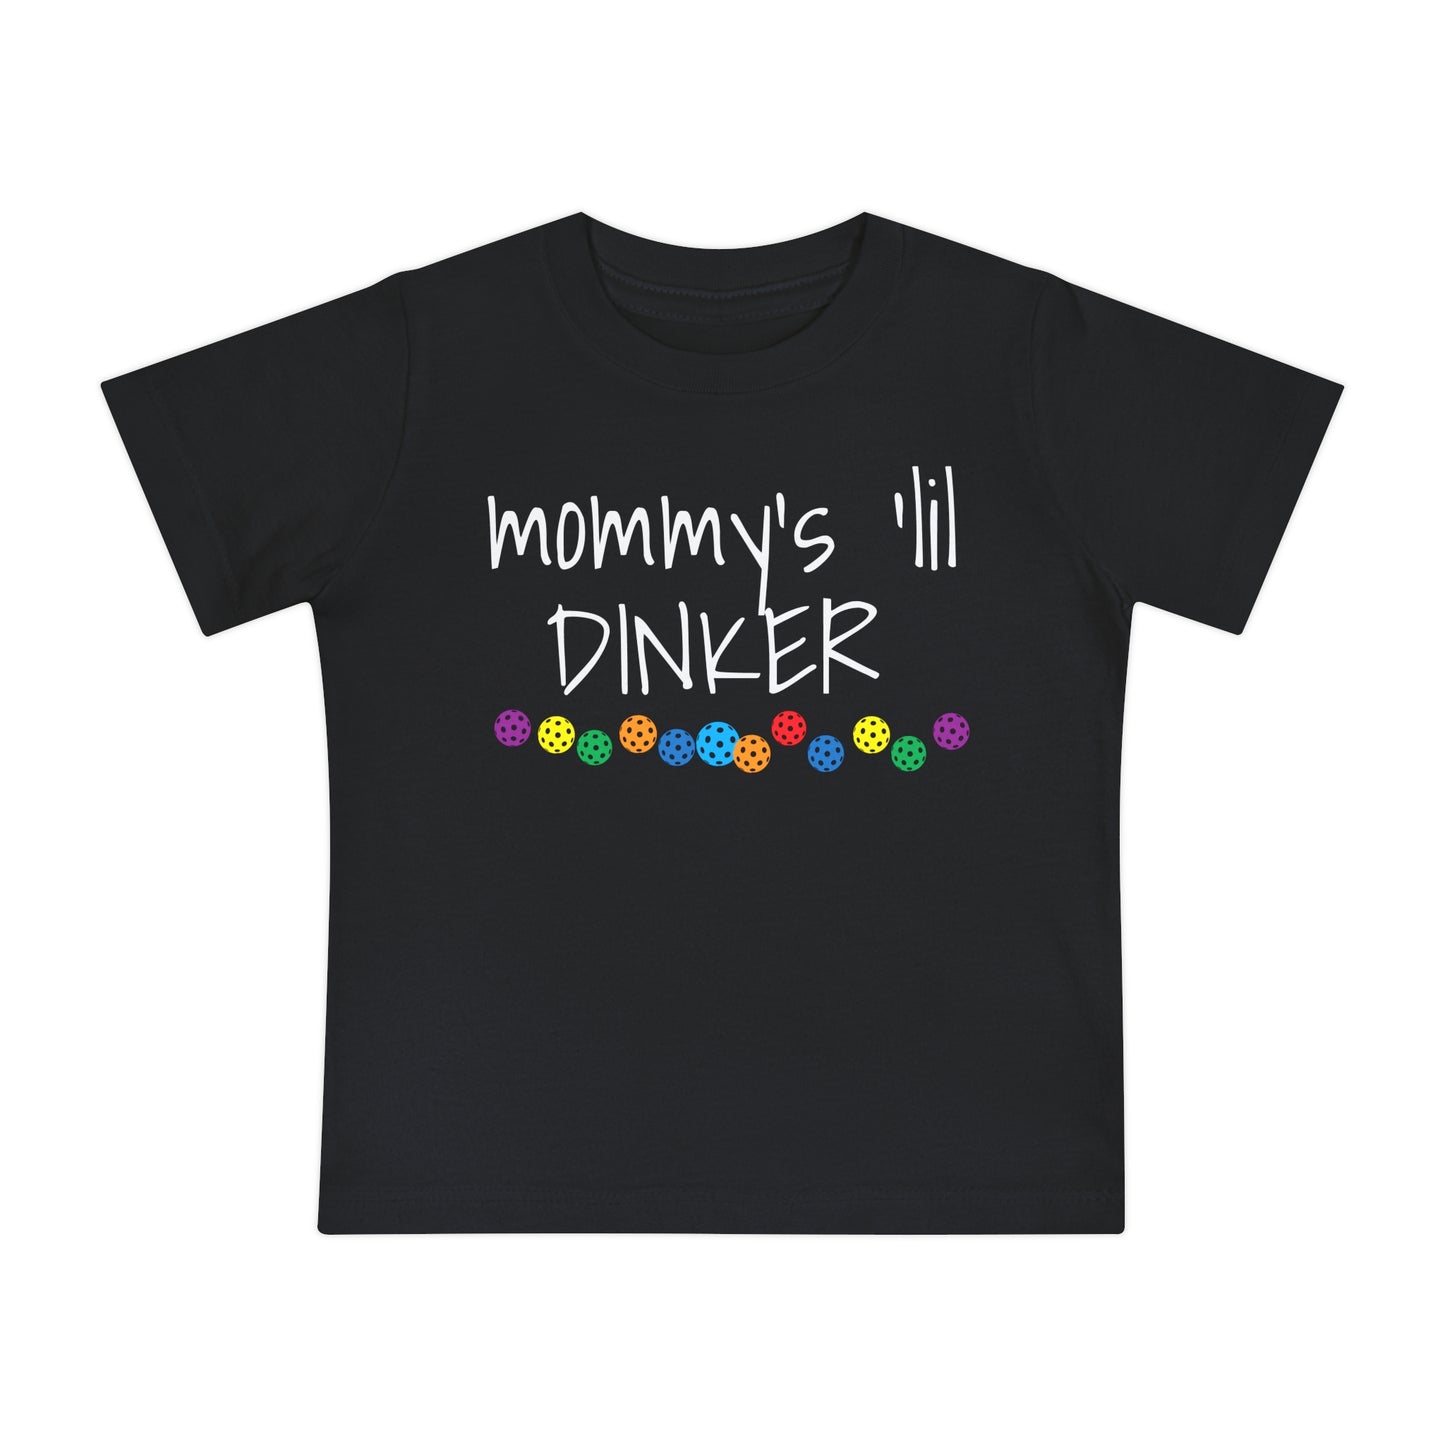 Pickleball Baby Short Sleeve T-Shirt - Mommy's 'lil dinker